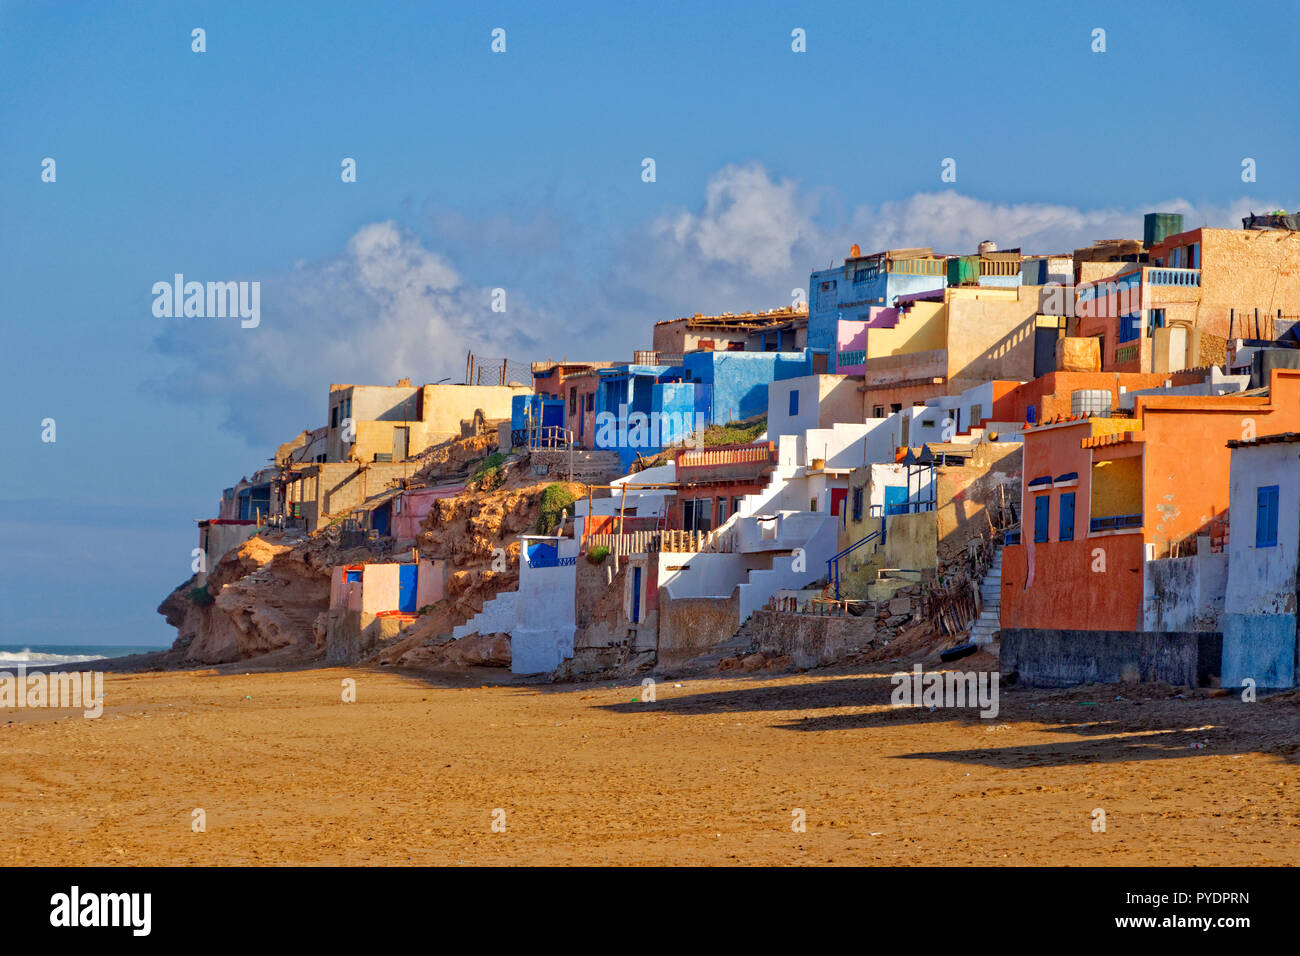 Océano Atlántico marroquí pueblo pesquero de Tifnit, al sur de Agadir, Marruecos, Norte de África Occidental. Foto de stock